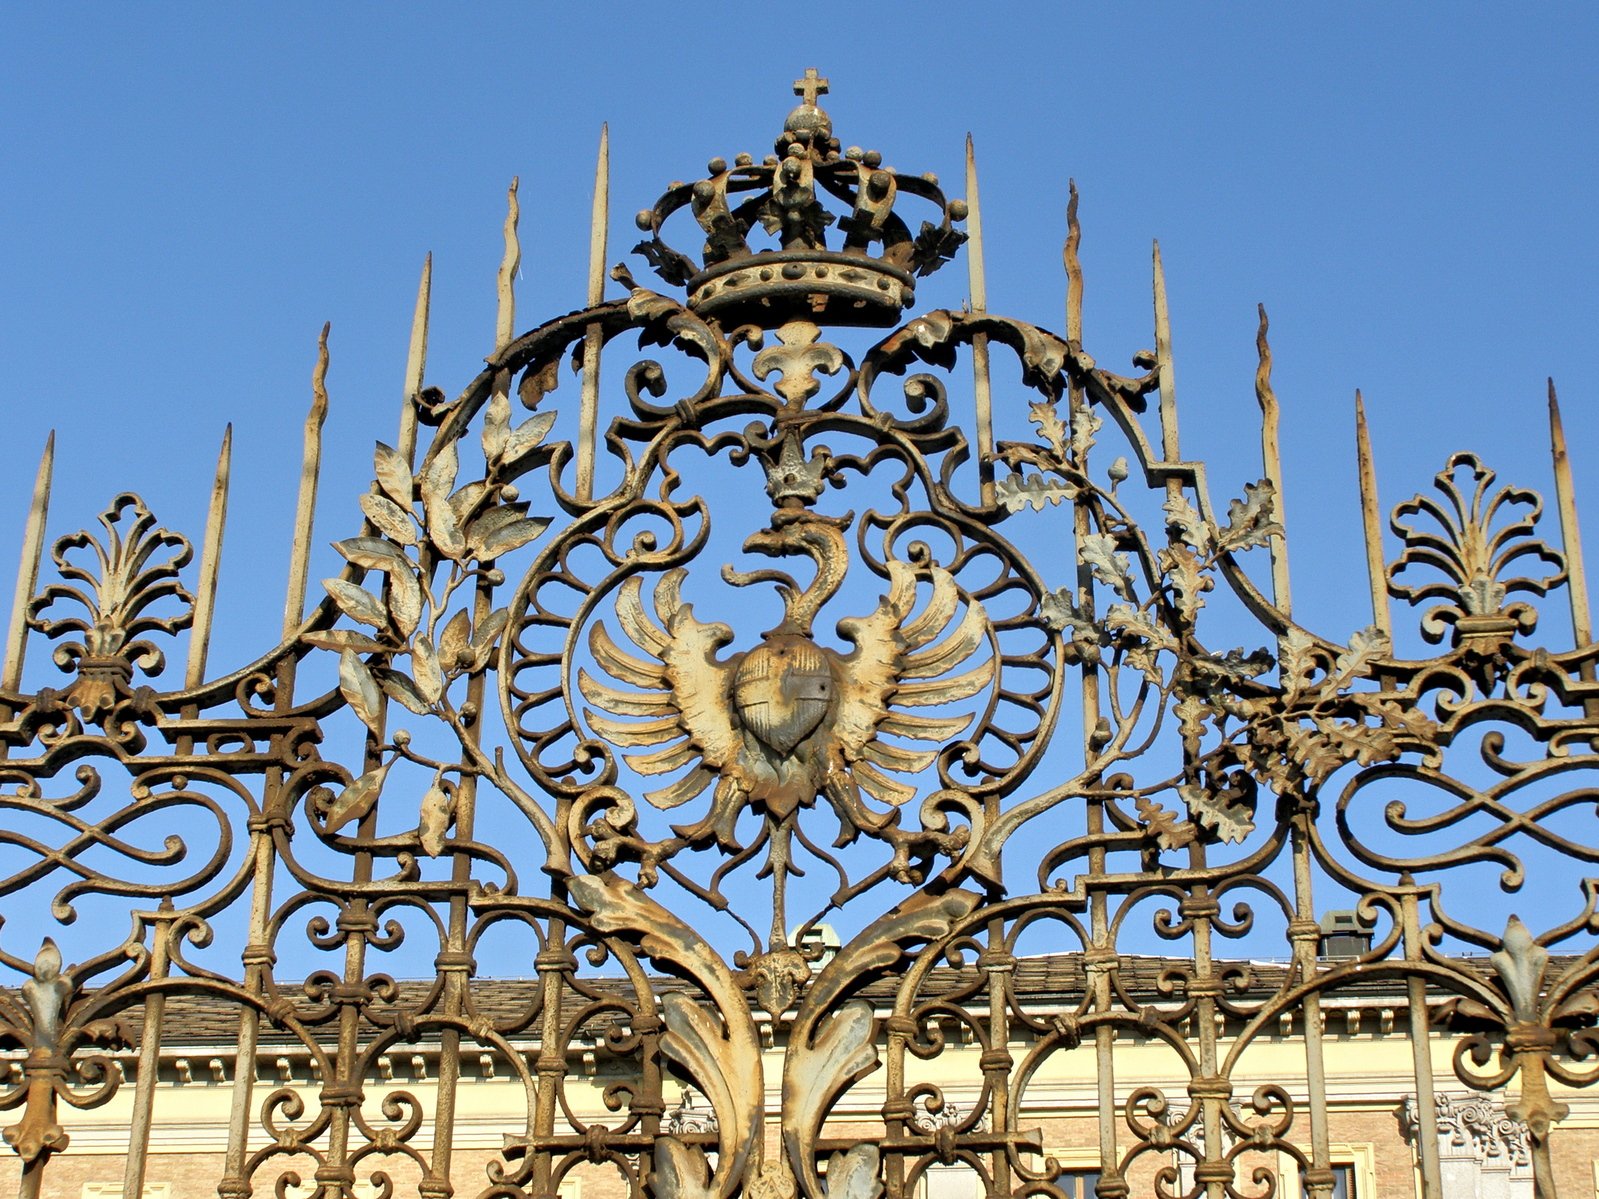 an ornate, iron gate with a decorative bird emblem